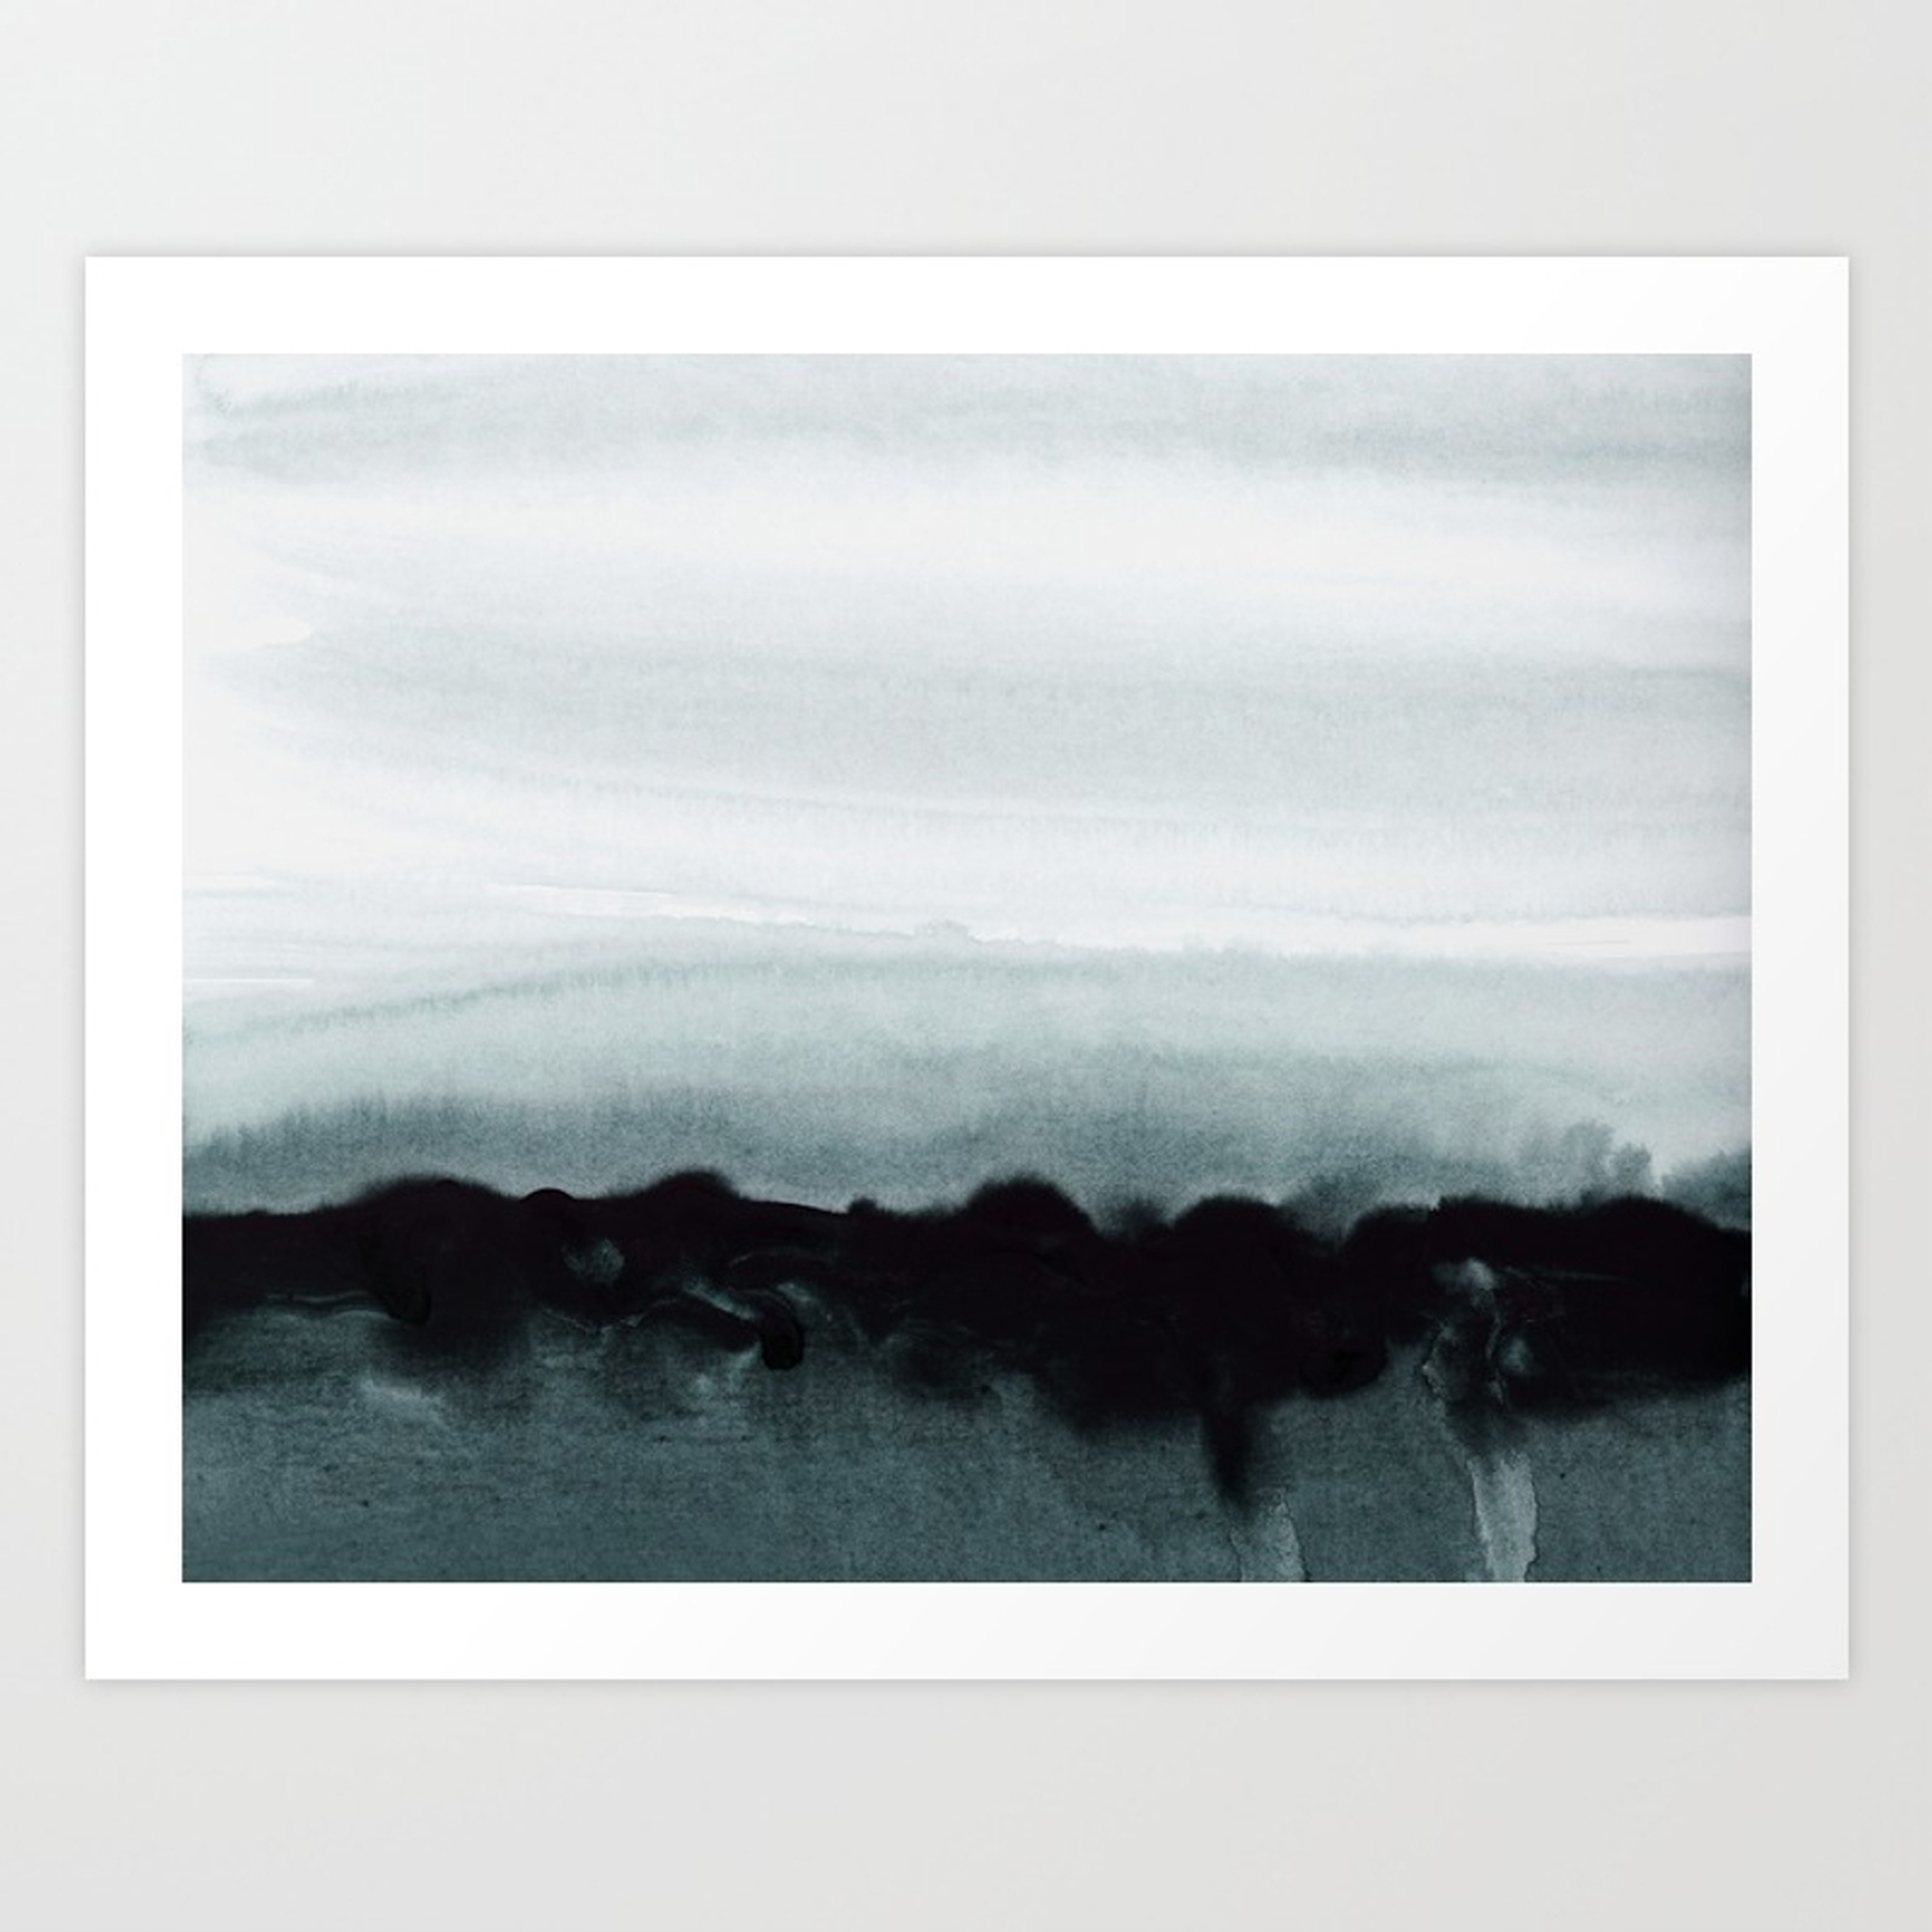 blurred landscape Art Print - X-Large by Patternization - Society6